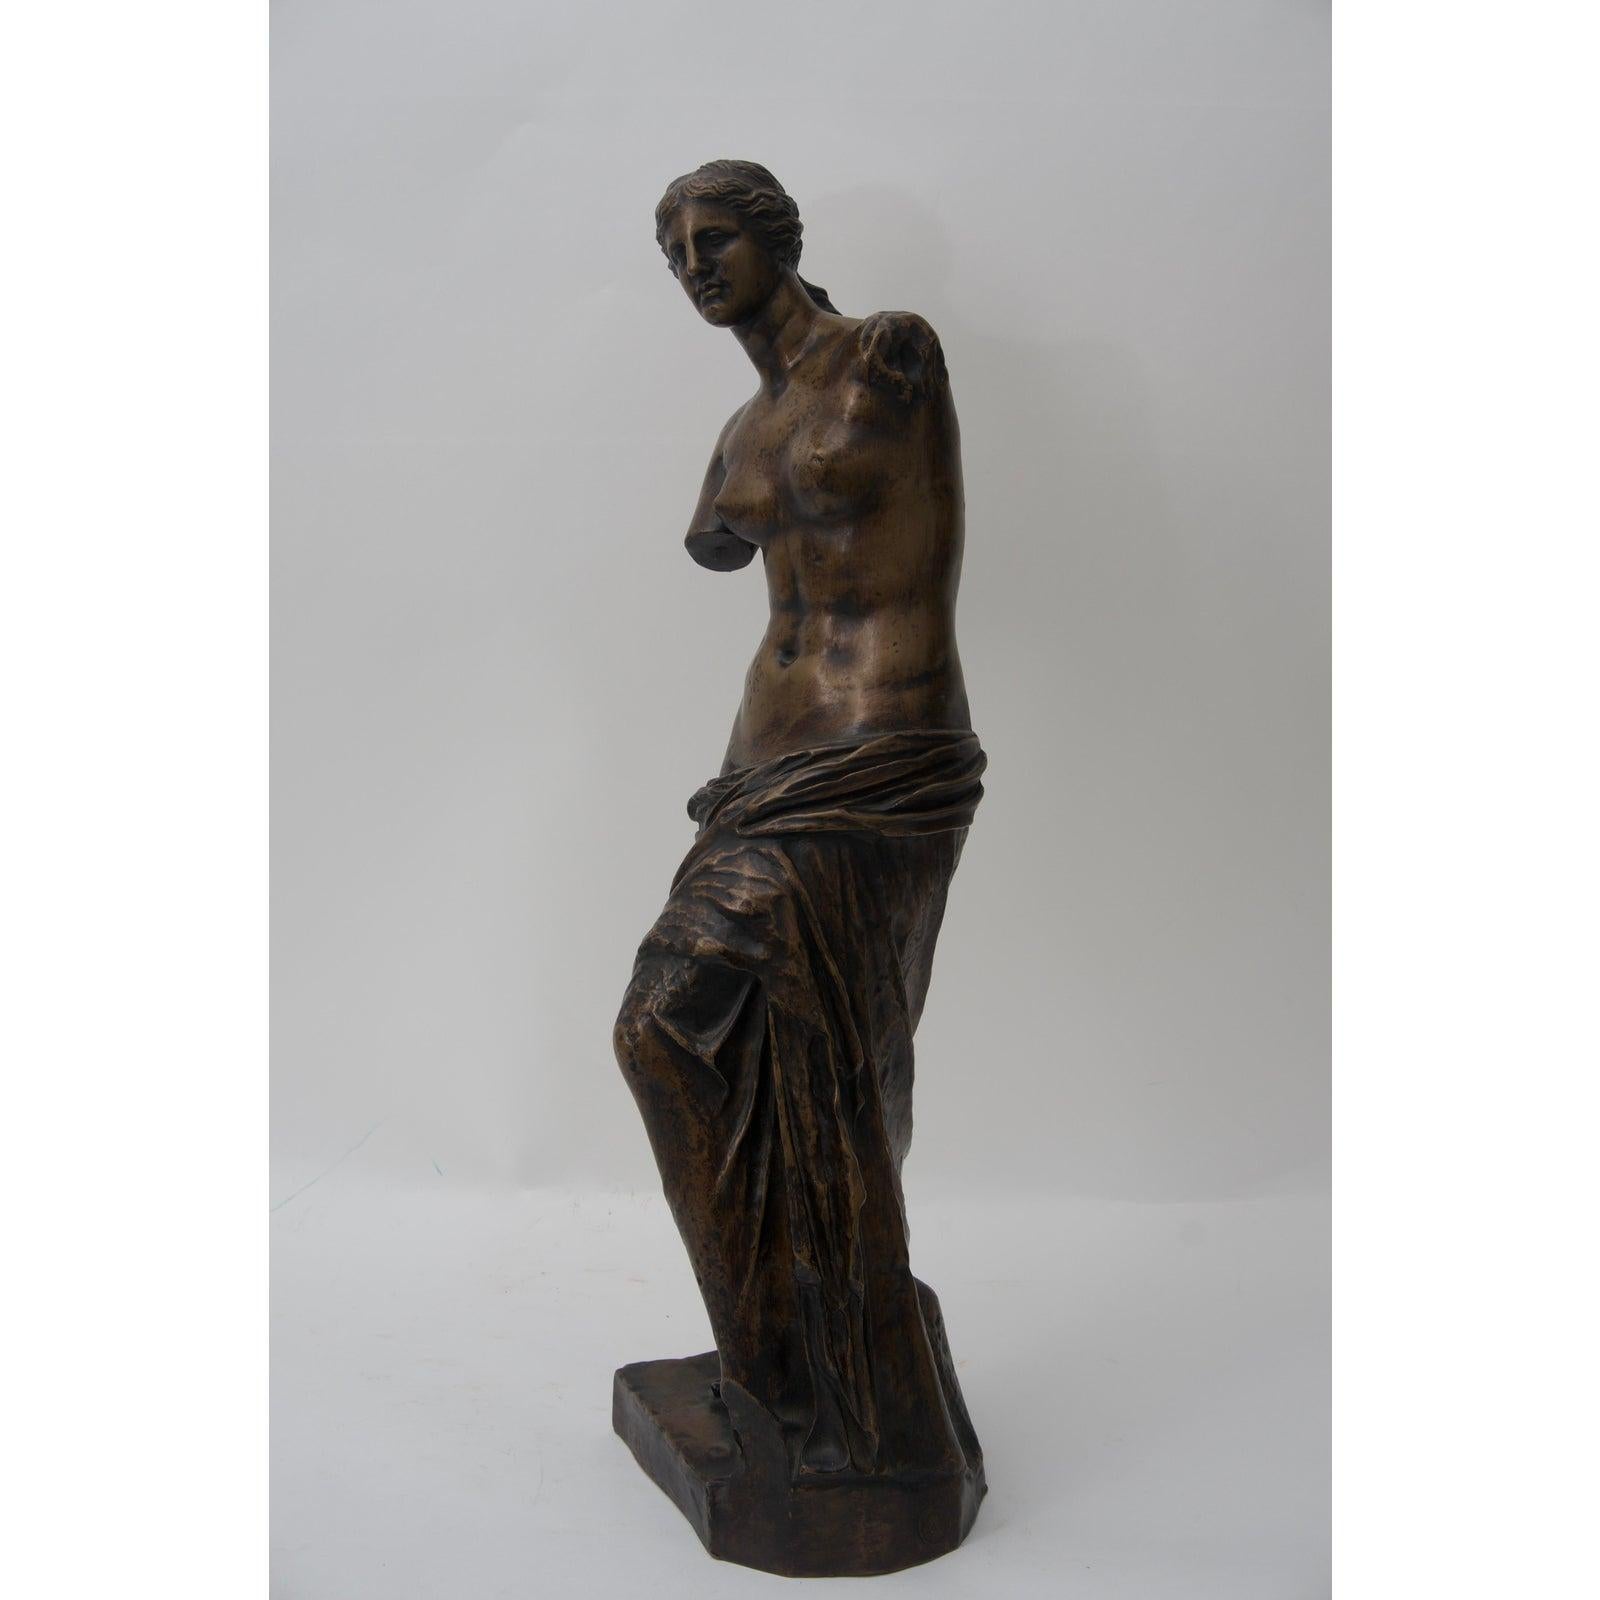 Cette sculpture en bronze de la Vénus de Milo date des années 1860-1880 et a été coulée par la fonderie F. Barbedinne à Paris, créée en 1838 par Ferdinand Barbedienne et Achille Collas.  

Note : La pièce est marquée sur la base (voir dernière